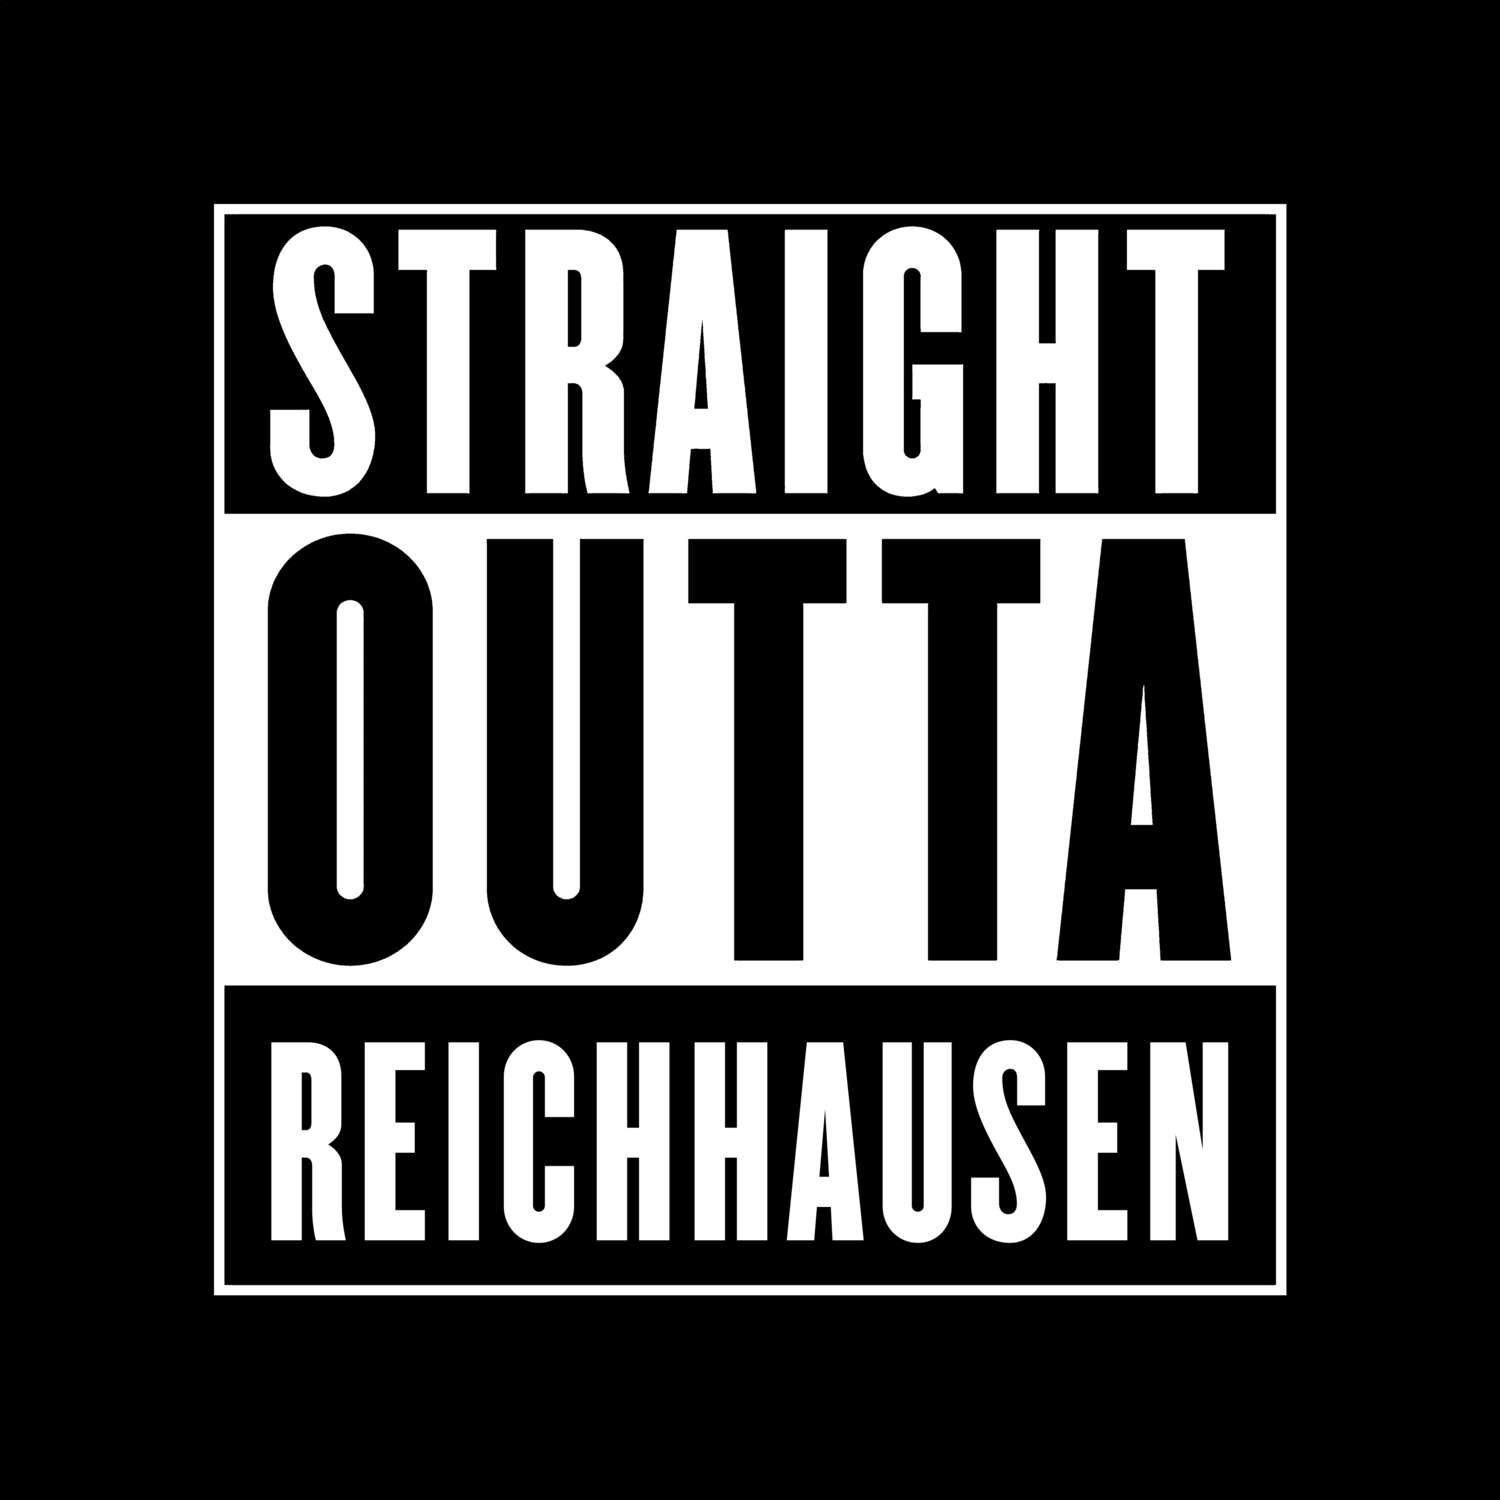 Reichhausen T-Shirt »Straight Outta«